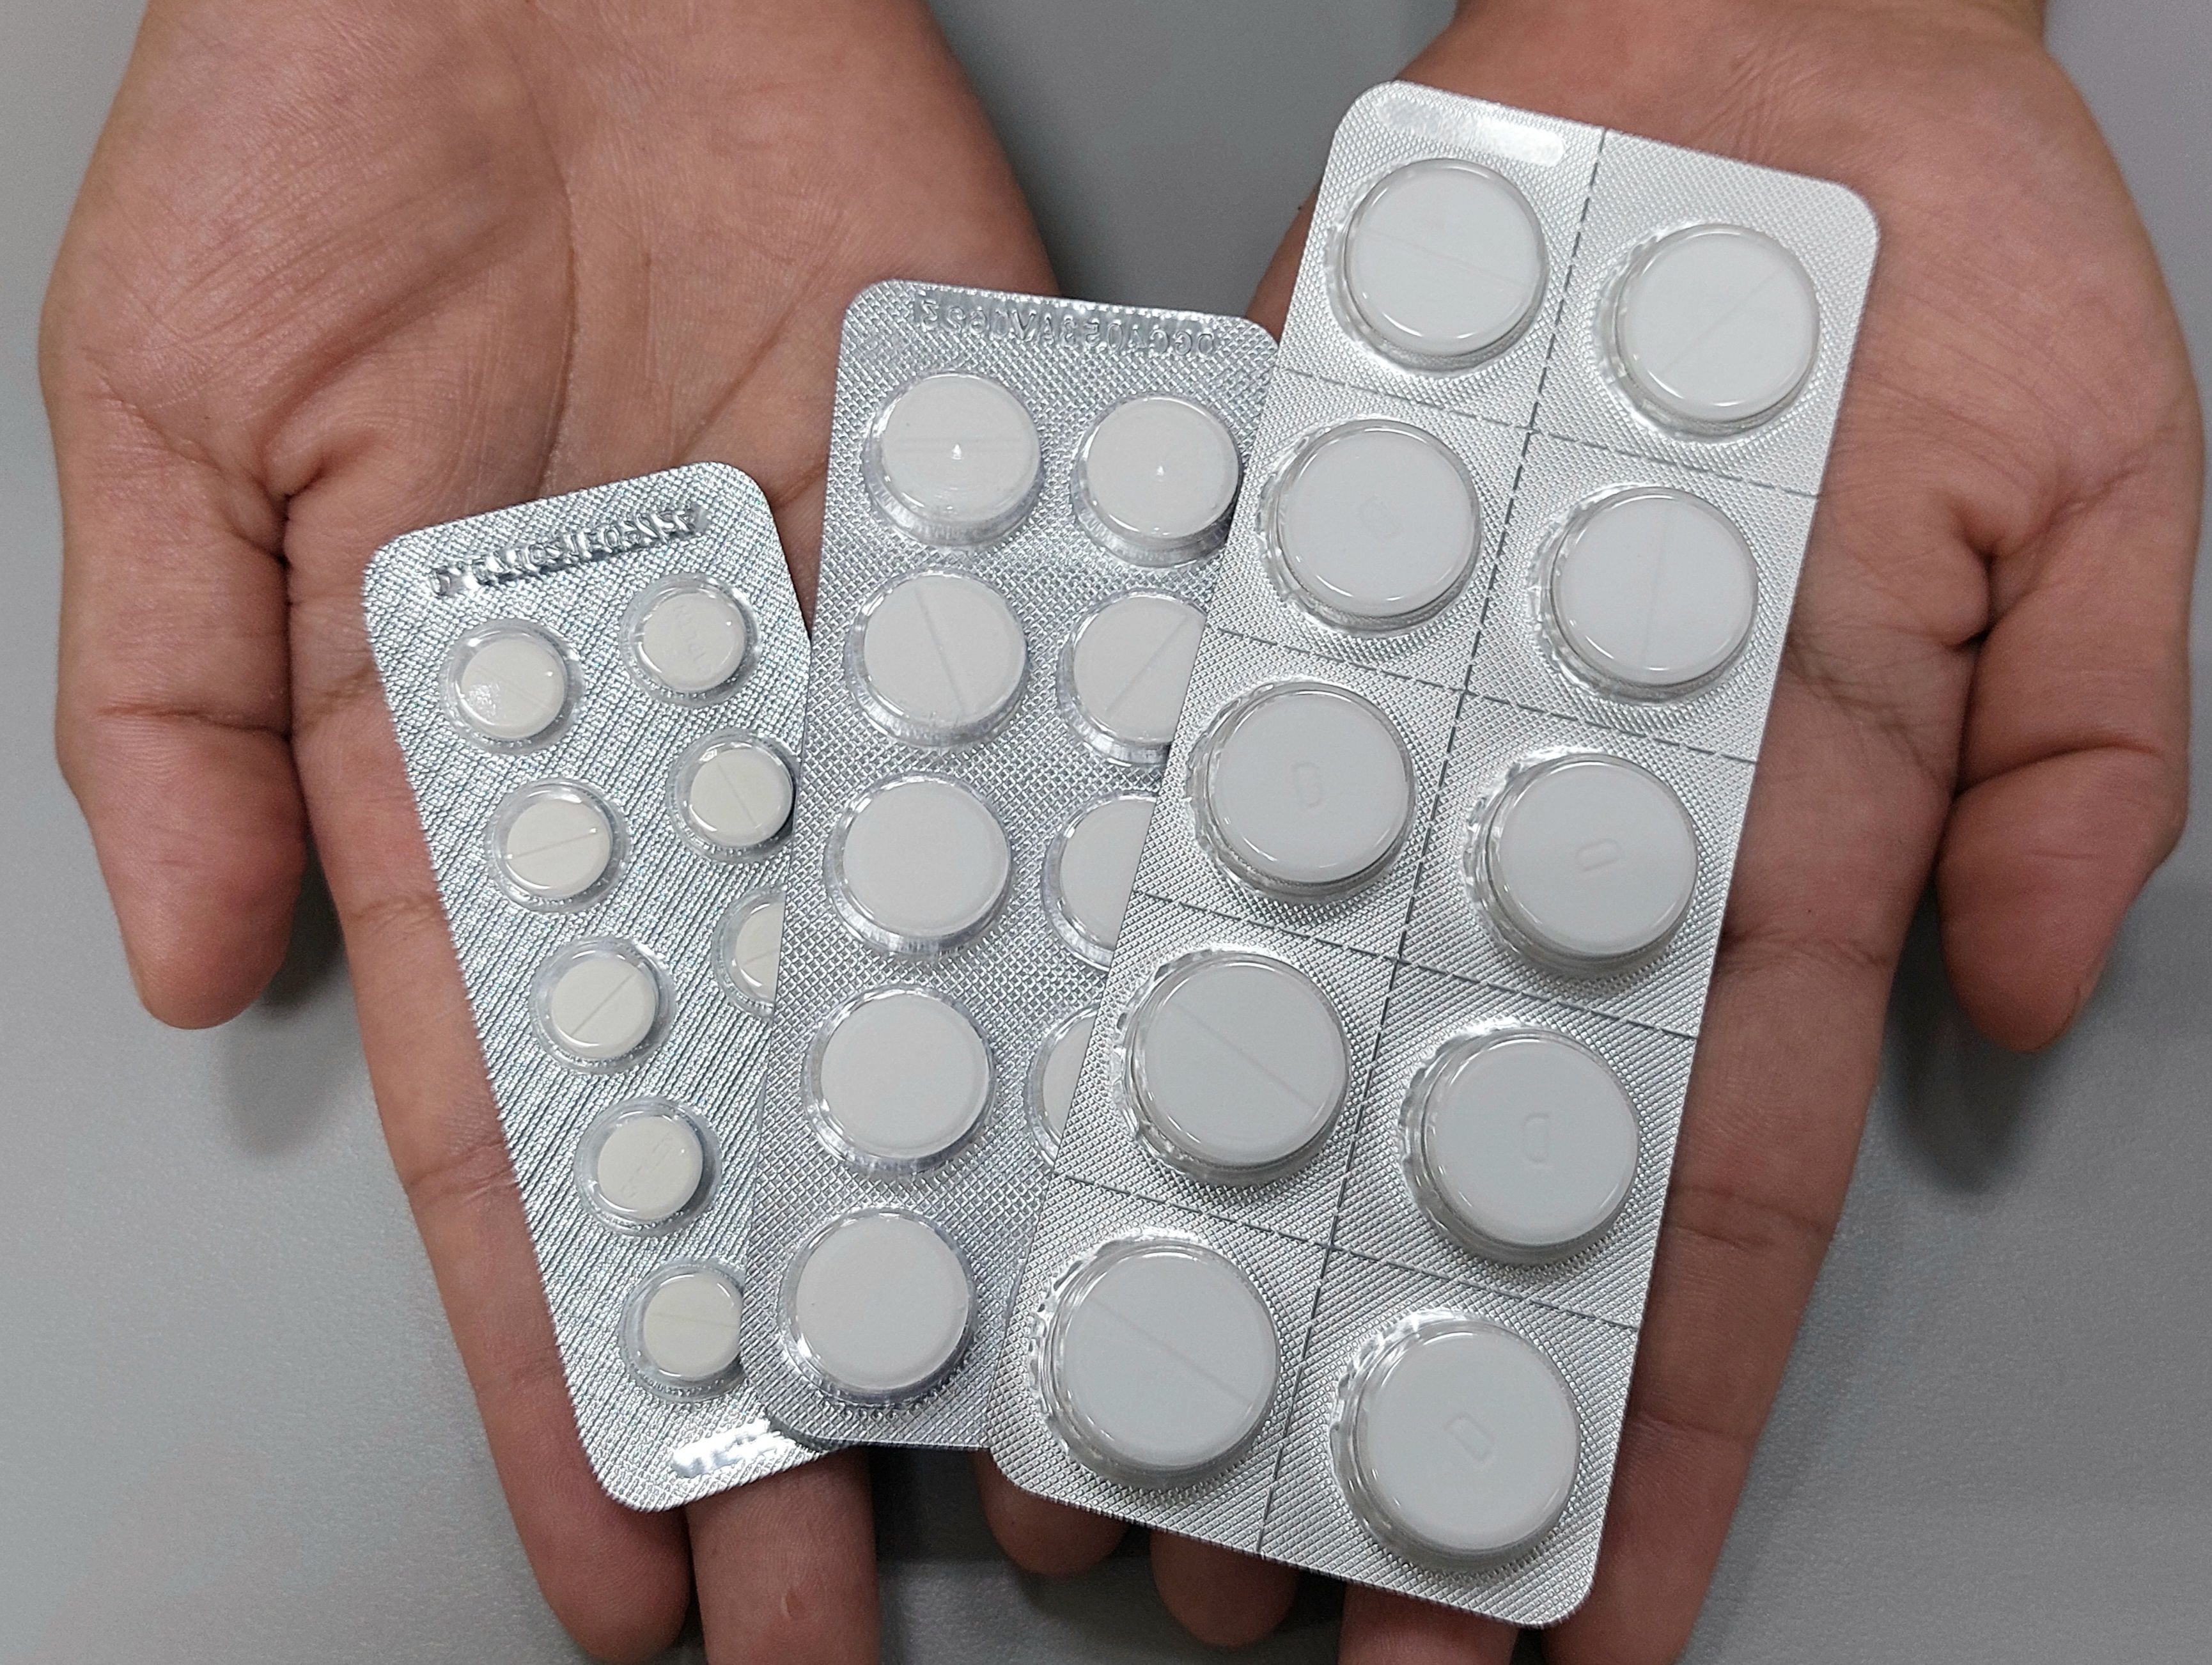 Aun con receta a pacientes se les complica comprar clonazepam en Guayaquil  tras denunciarse el mal uso del fármaco | Comunidad | Guayaquil | El  Universo